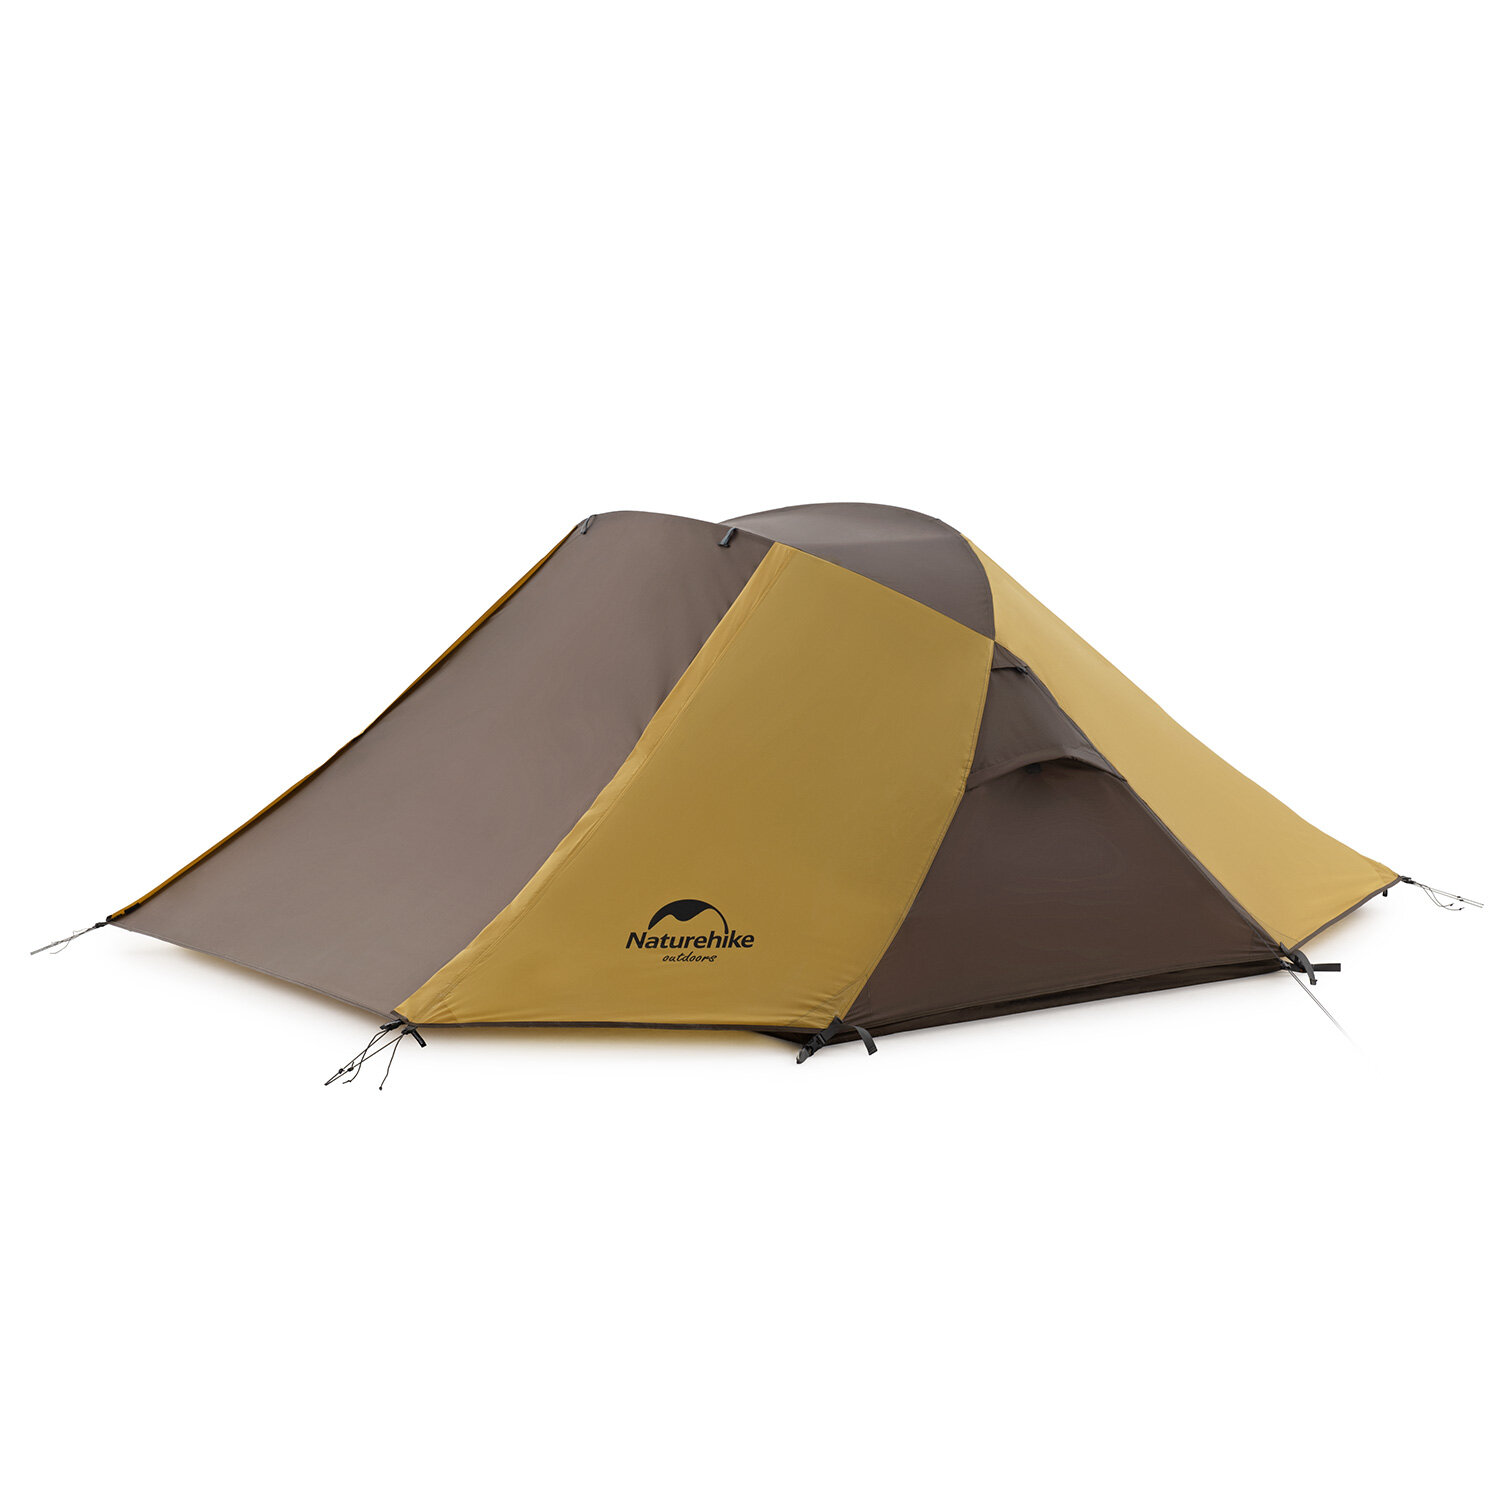 Tente pour deux personnes Naturehike avec structure en croix de papillon, imperméable et protection solaire, grande capacité pour le camping et les voyages en plein air.